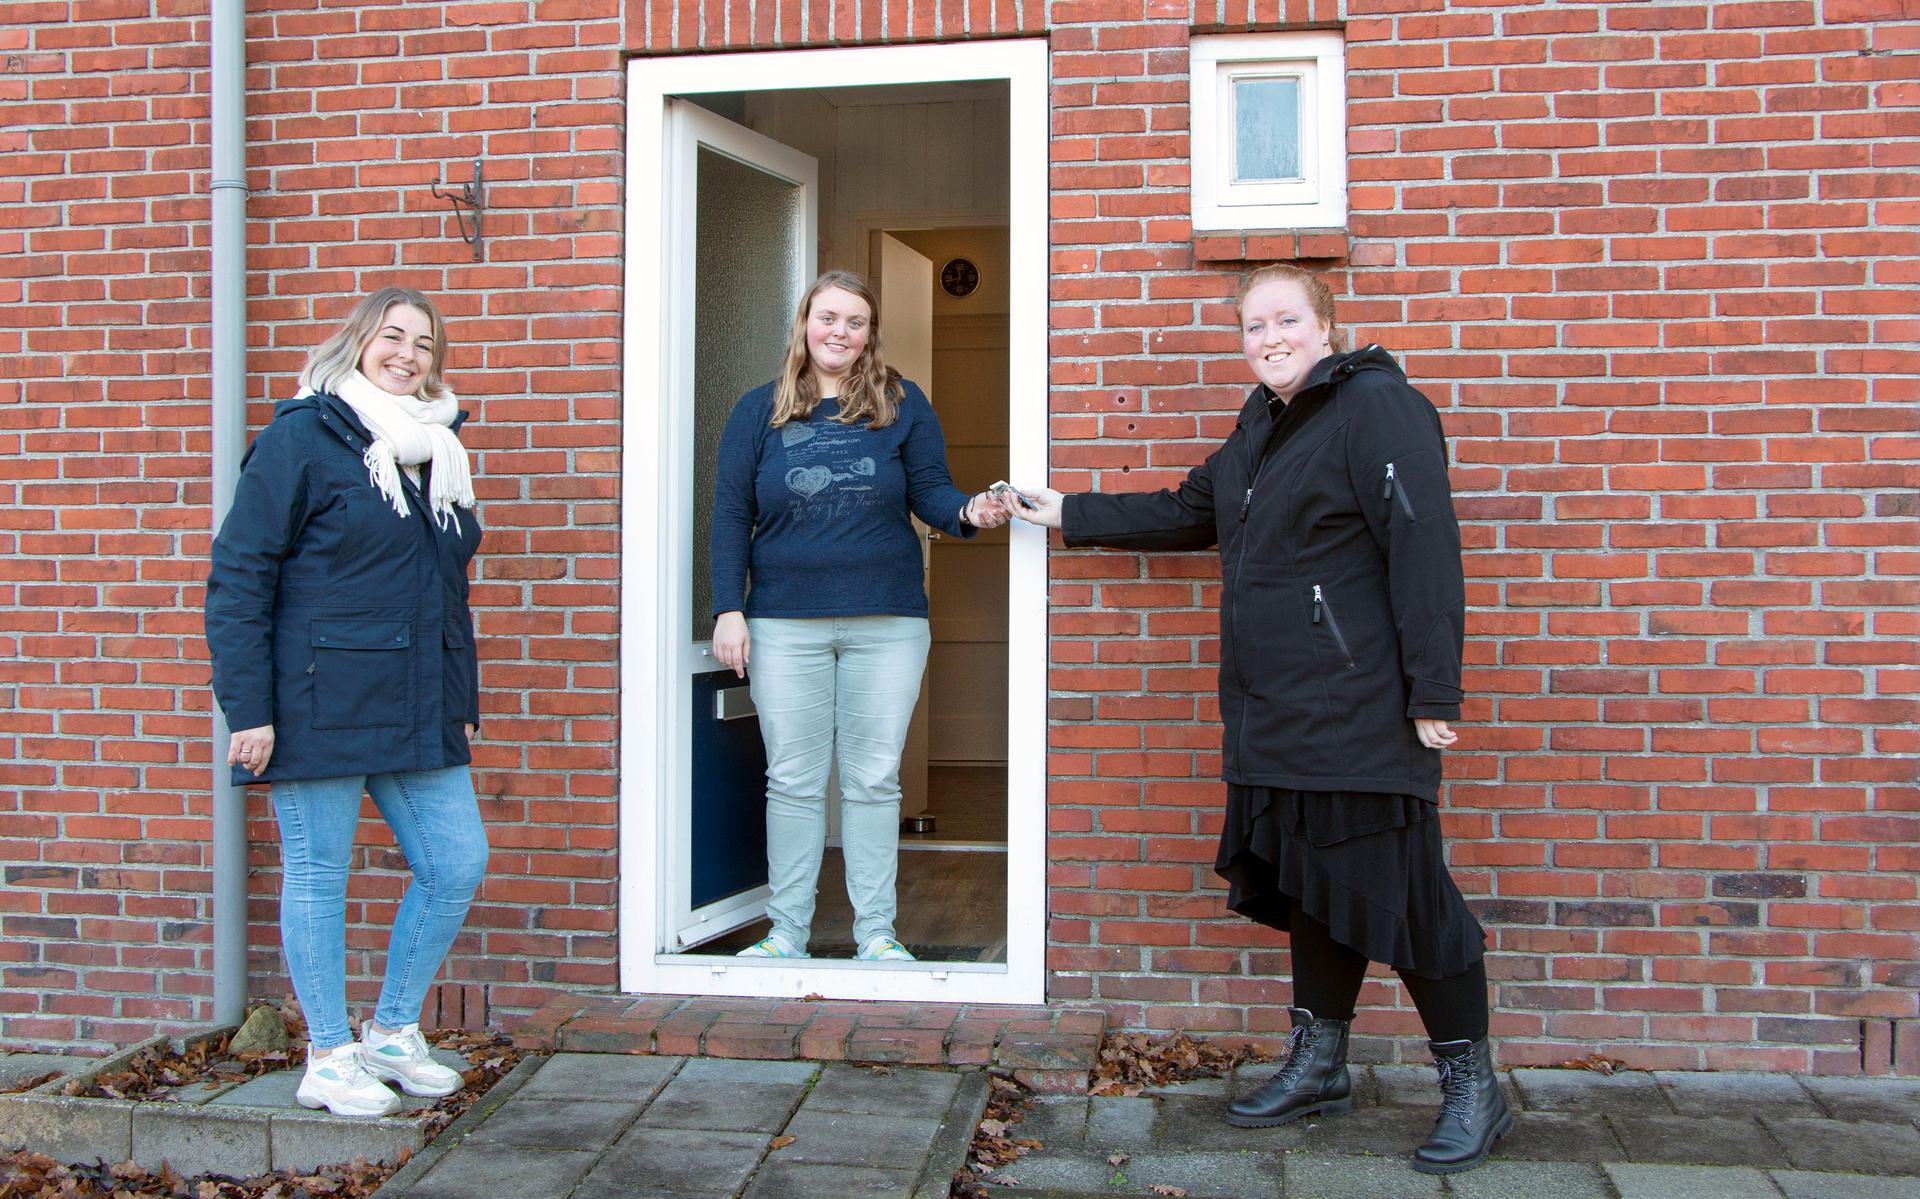 Eind vorig jaar ontving Jolanda de sleutel van haar woning (v.l.n.r.: Annemarie Giesen, Jolanda Simens, Chantal Benes).